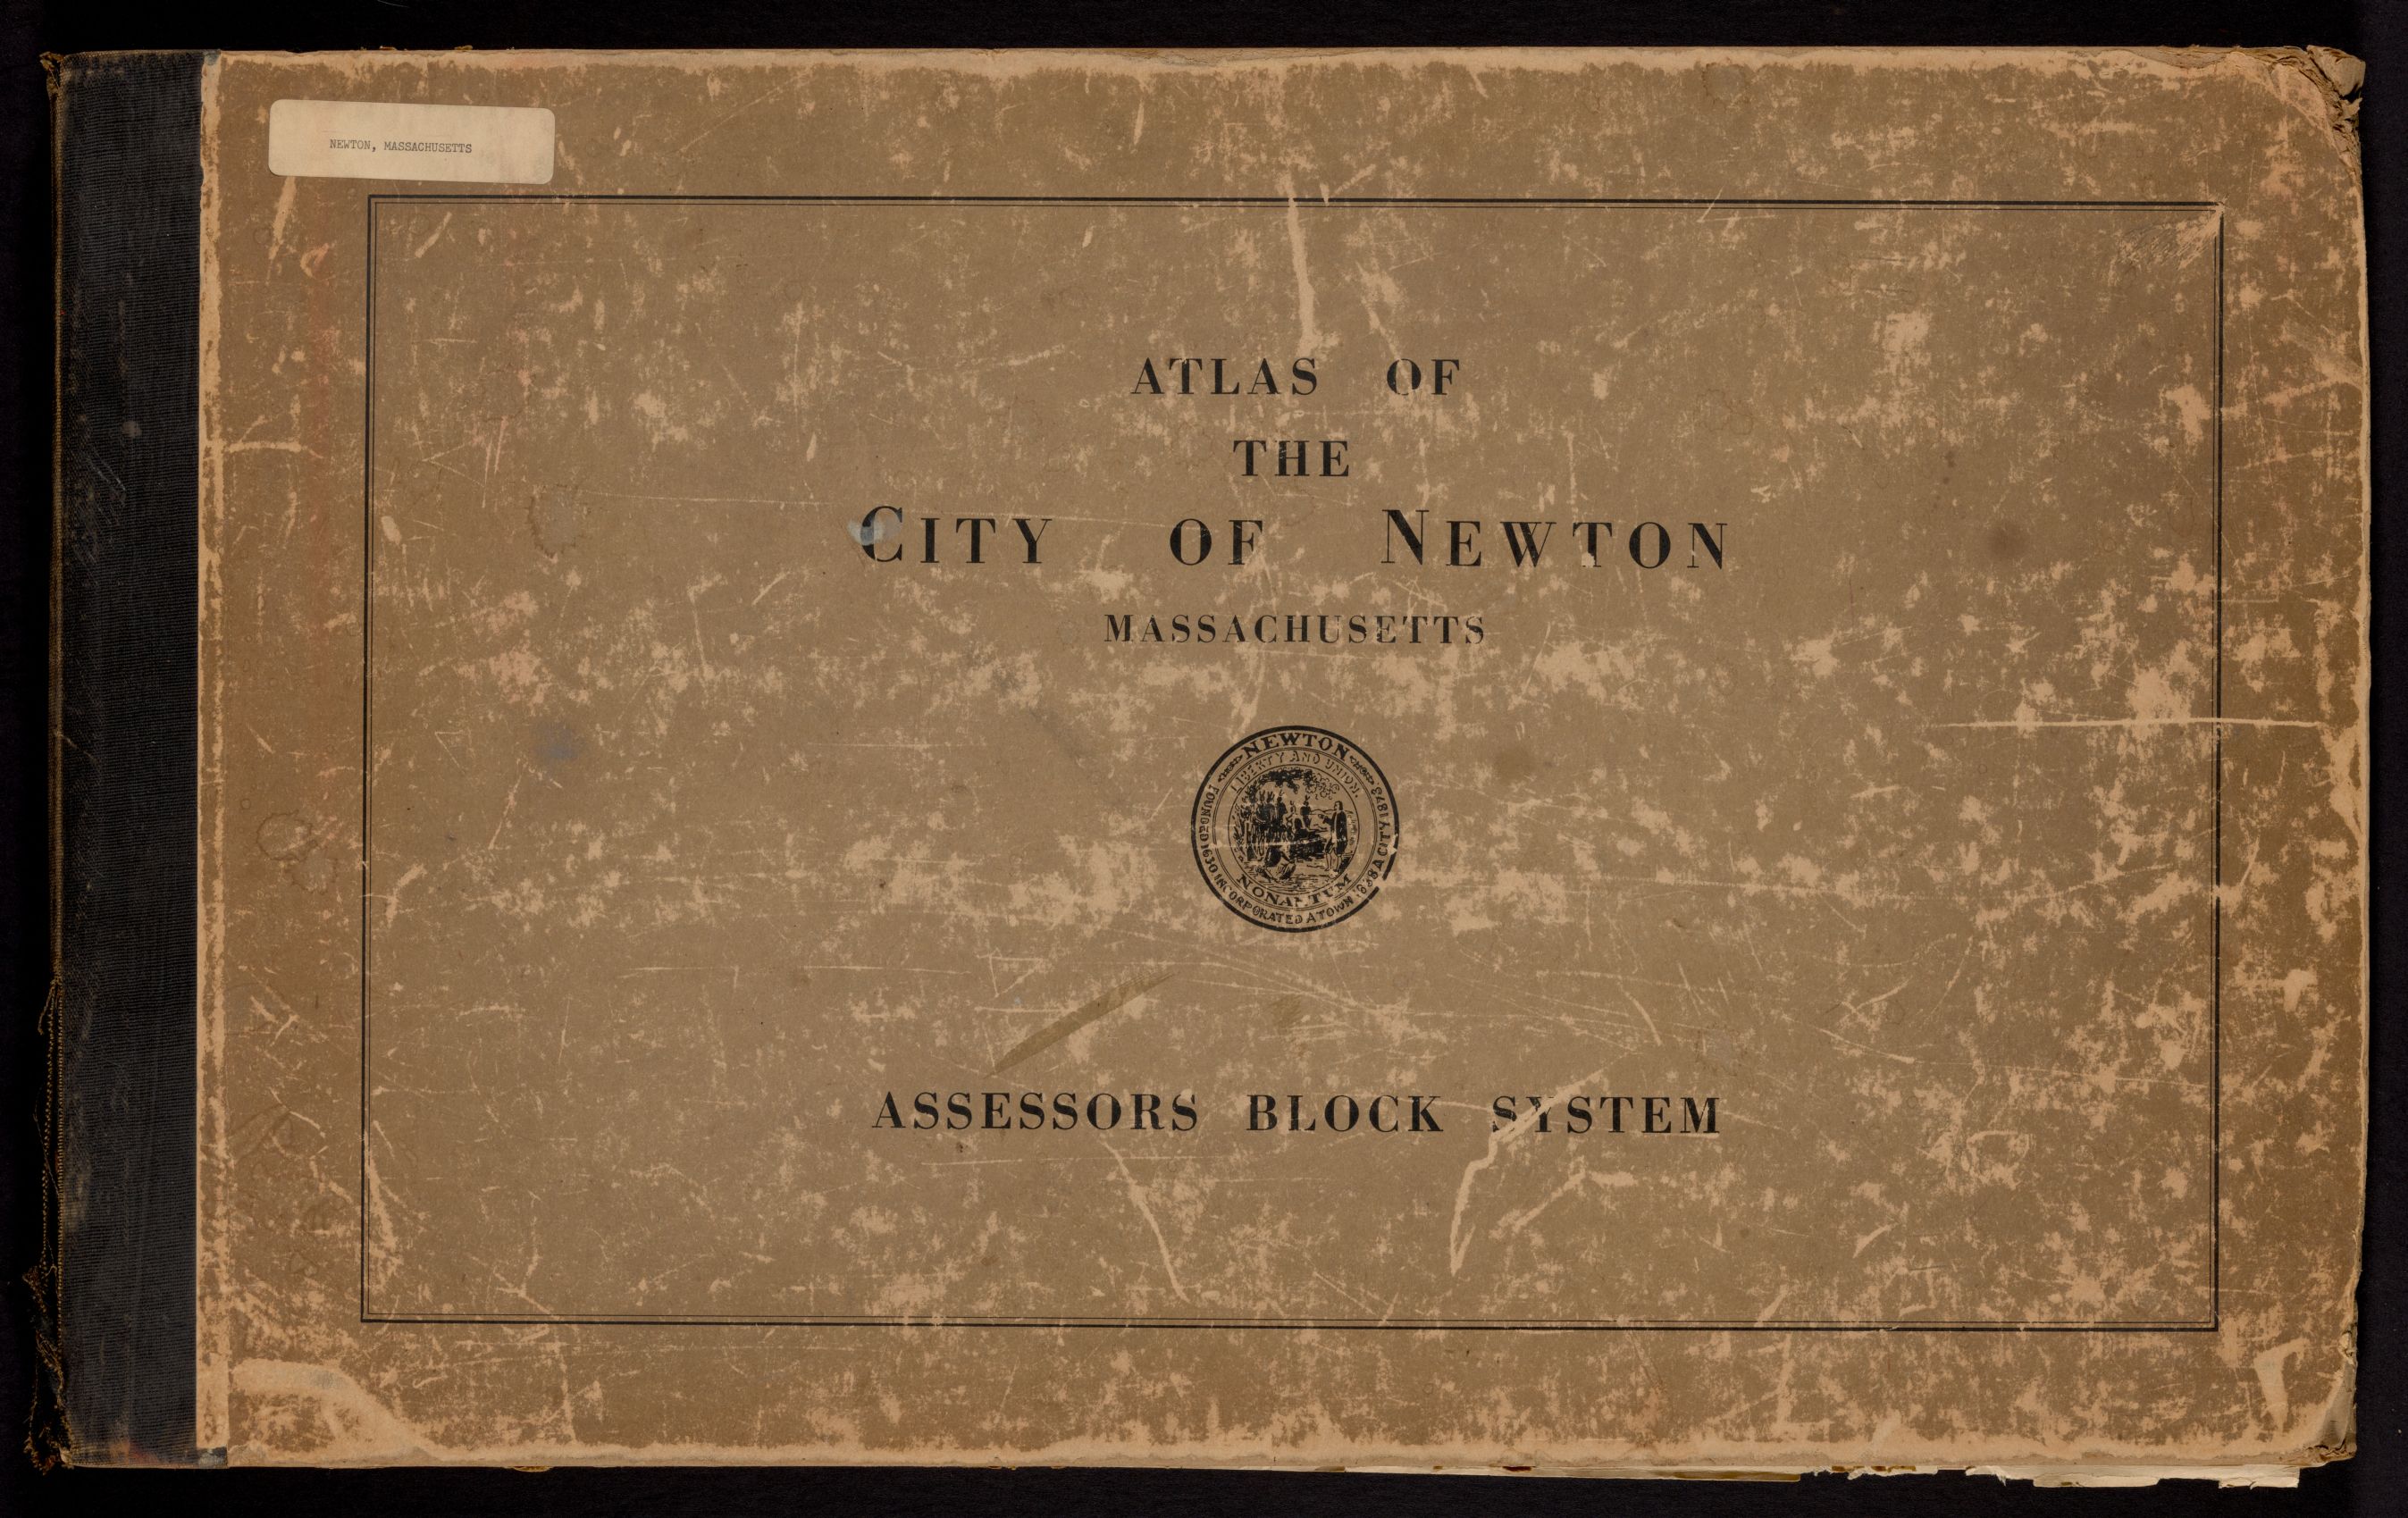 Atlas of the city of Newton Massachusetts